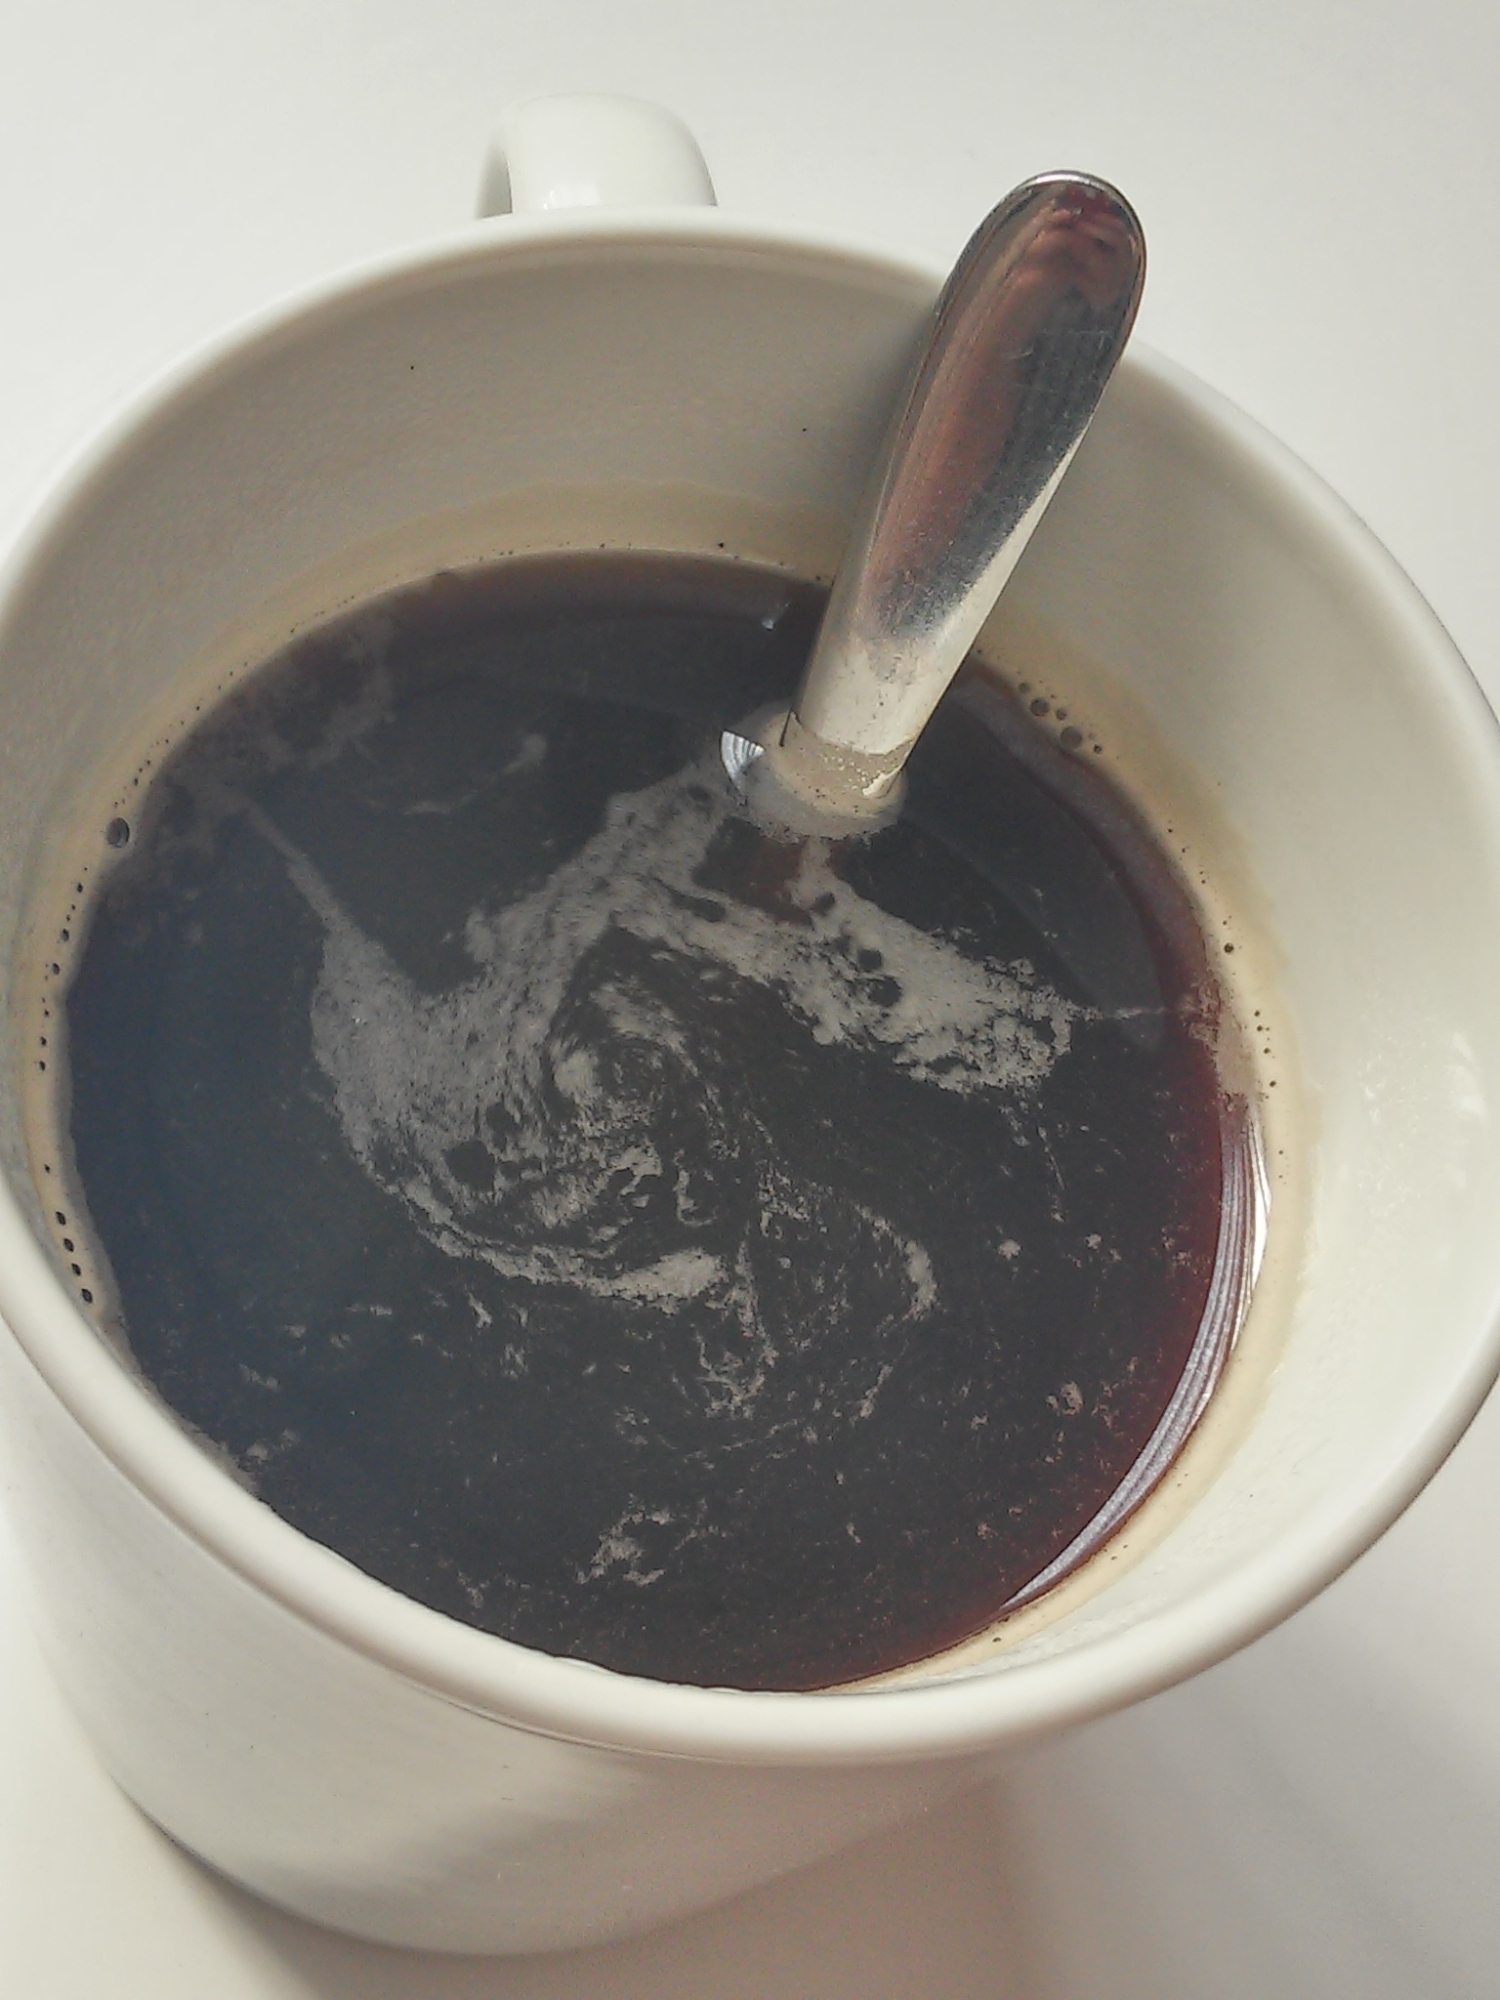 メイプルシロップが隠し味★カラメル風味のコーヒー